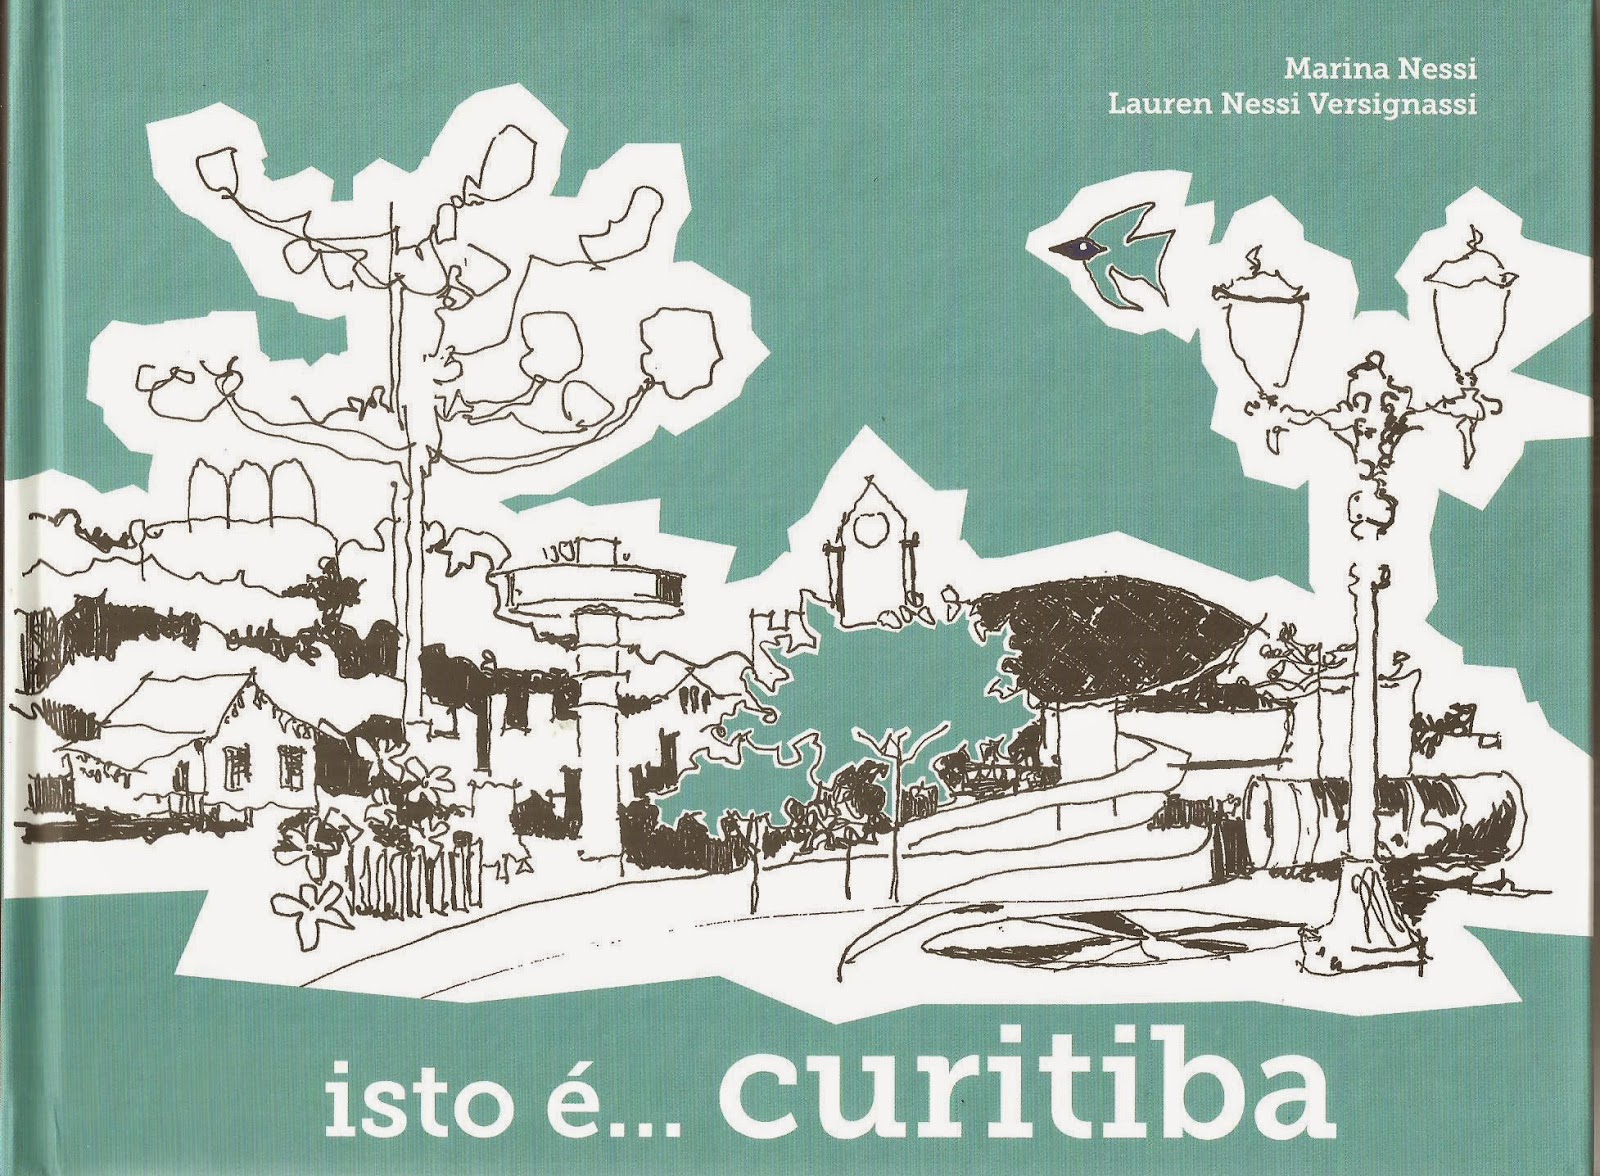 FCC - Fundação Catarinense de Cultura - Lançamento do livro Bruxa, sim.  Má, não!, de Simone Santos Guimarães